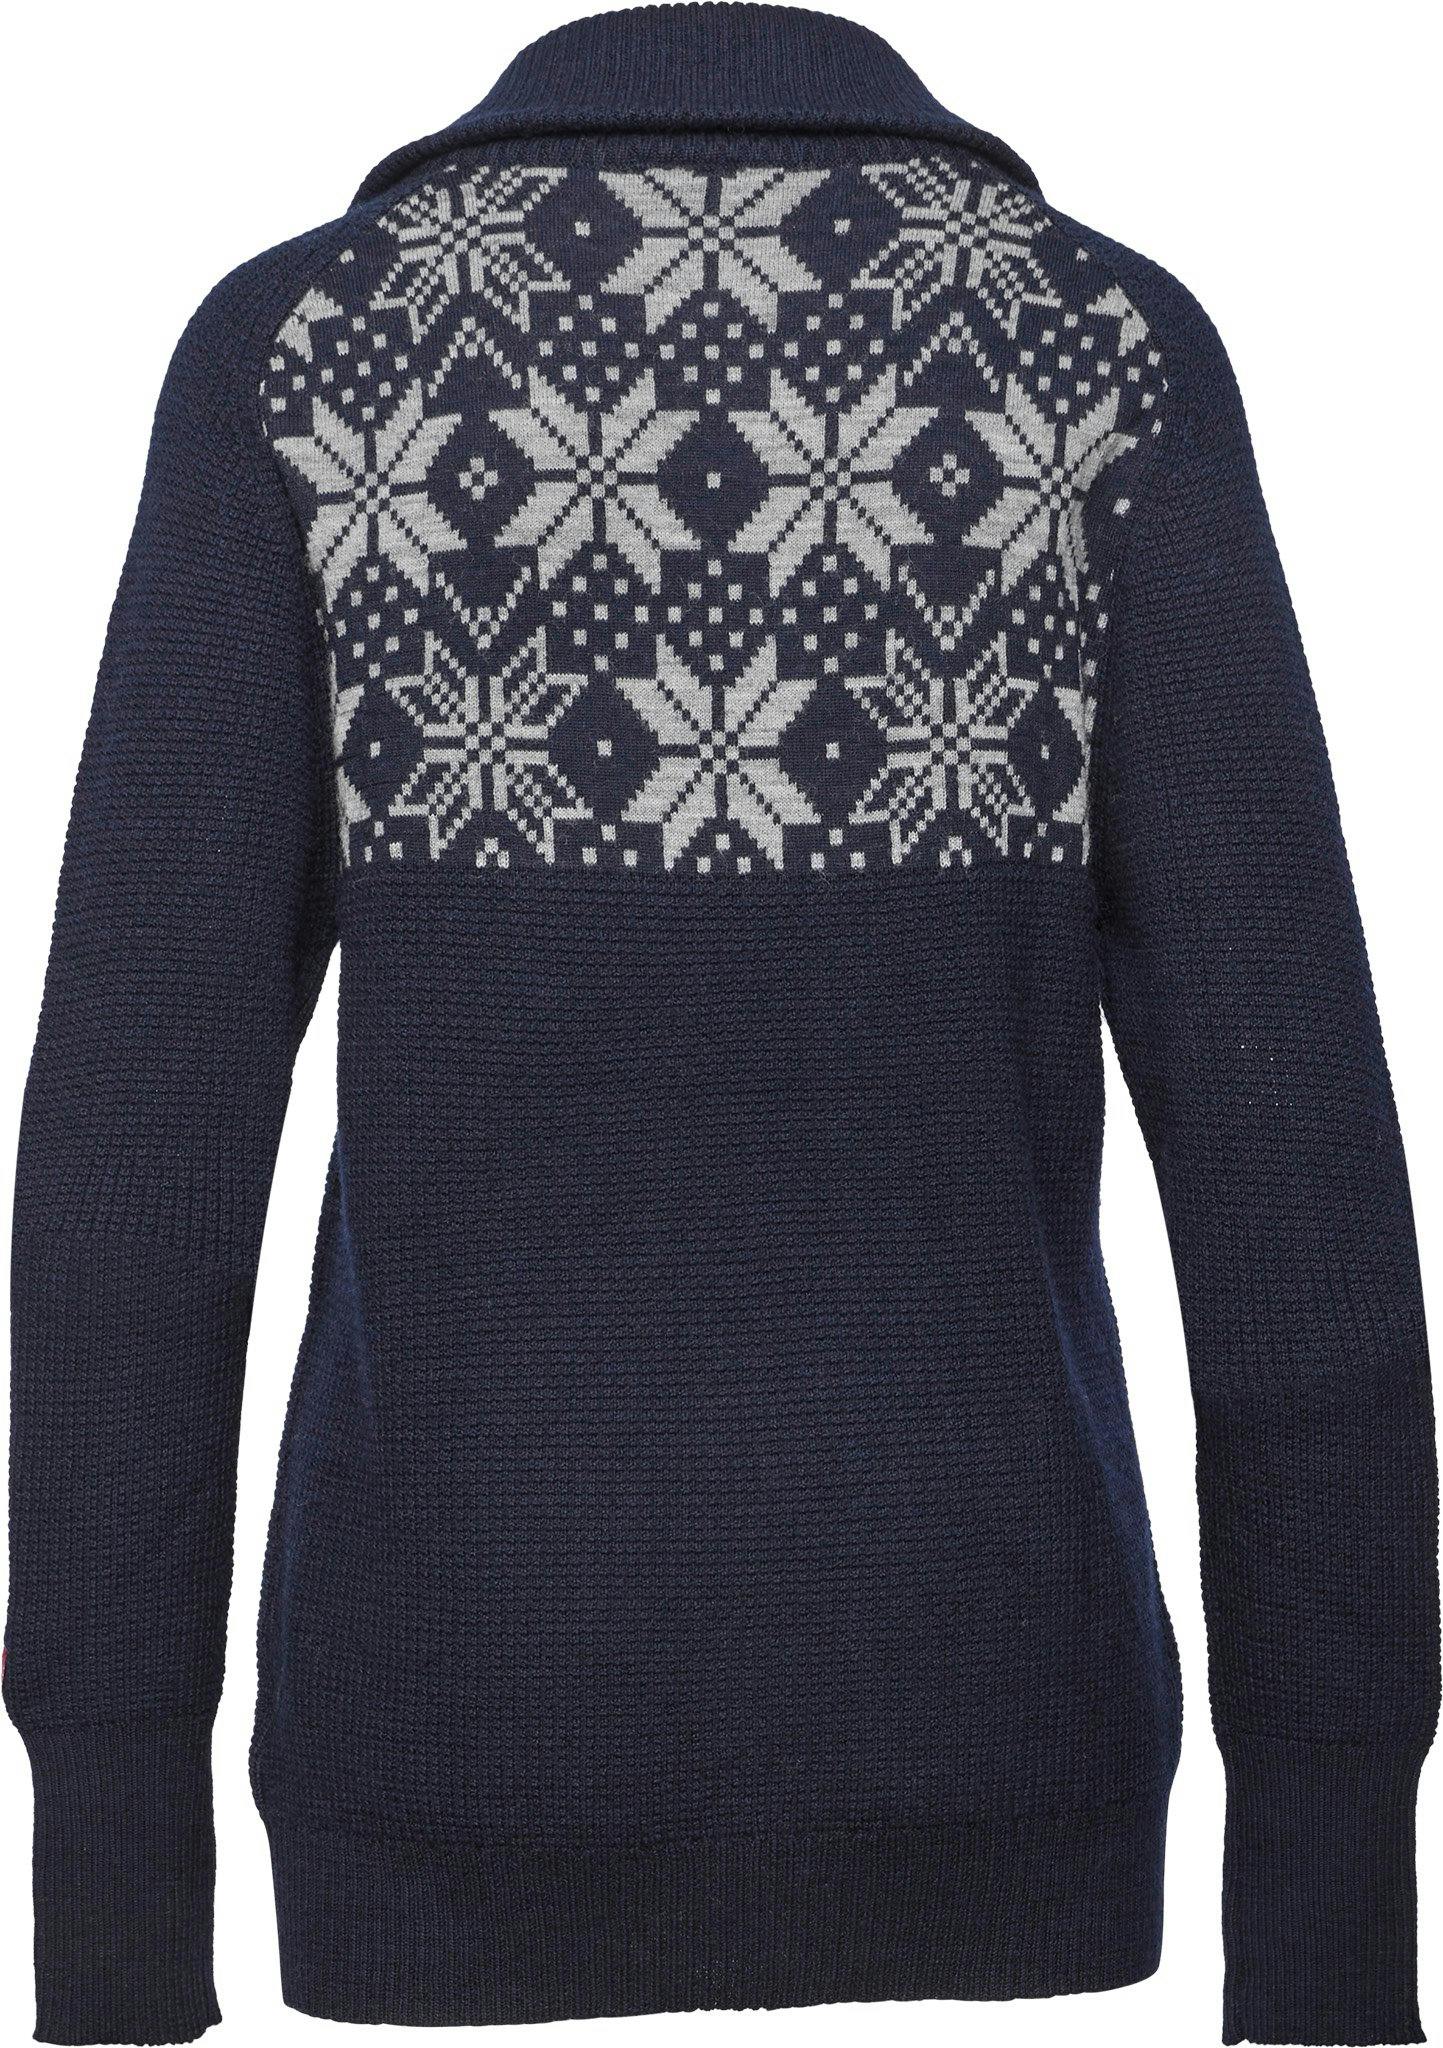 Product image for Rav Kiby Sweater - Men's